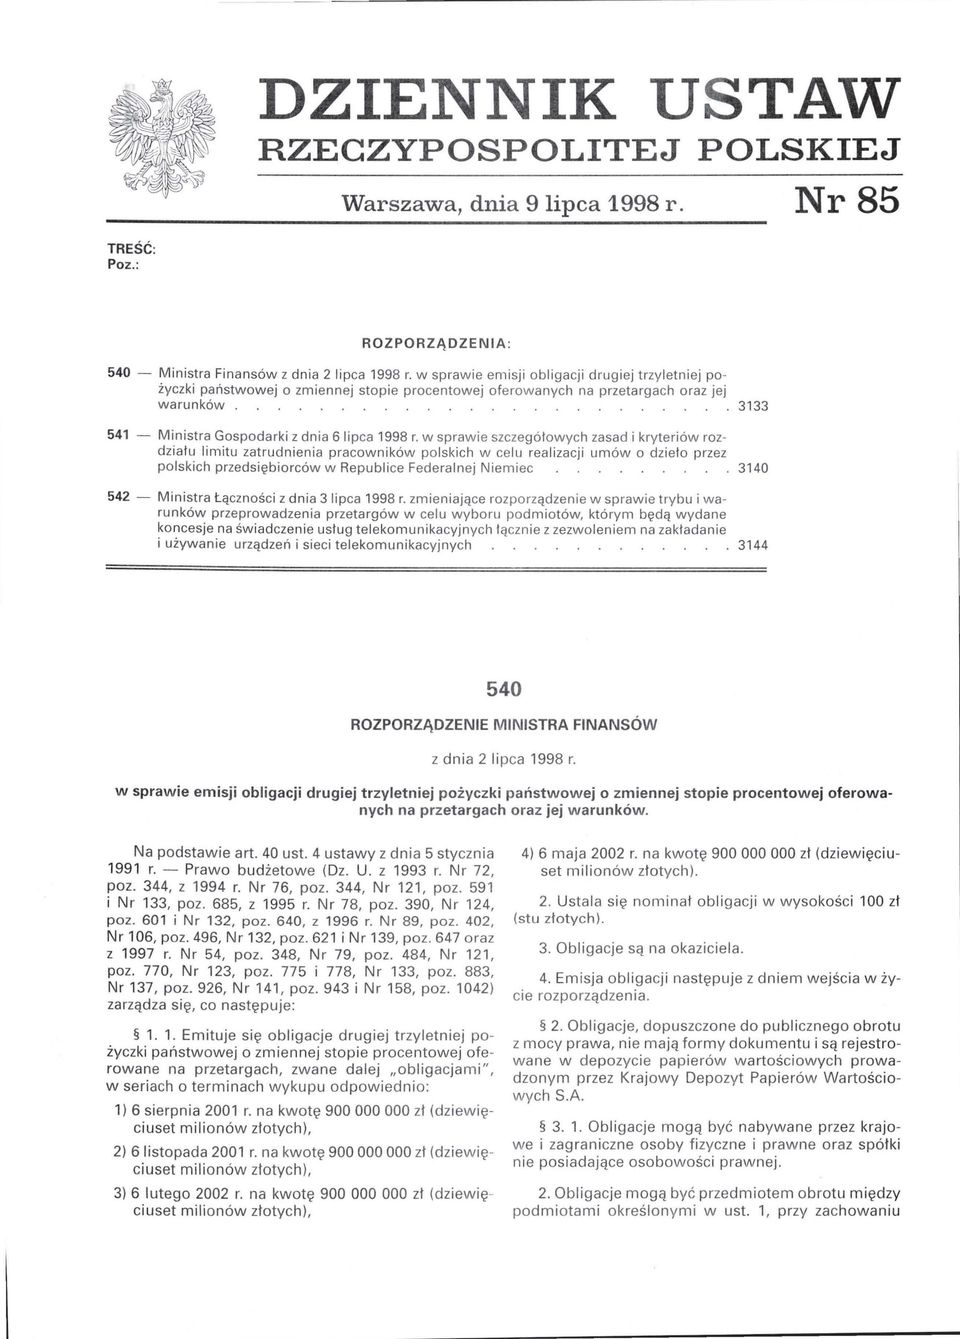 w sprawie szczegółowych zasad i kryteriów rozdziału limitu zatrudnienia pracowników polskich w celu realizacji umów o dzieło przez polskich przedsiębiorców w Republice Federalnej Niemiec 3140 542 -